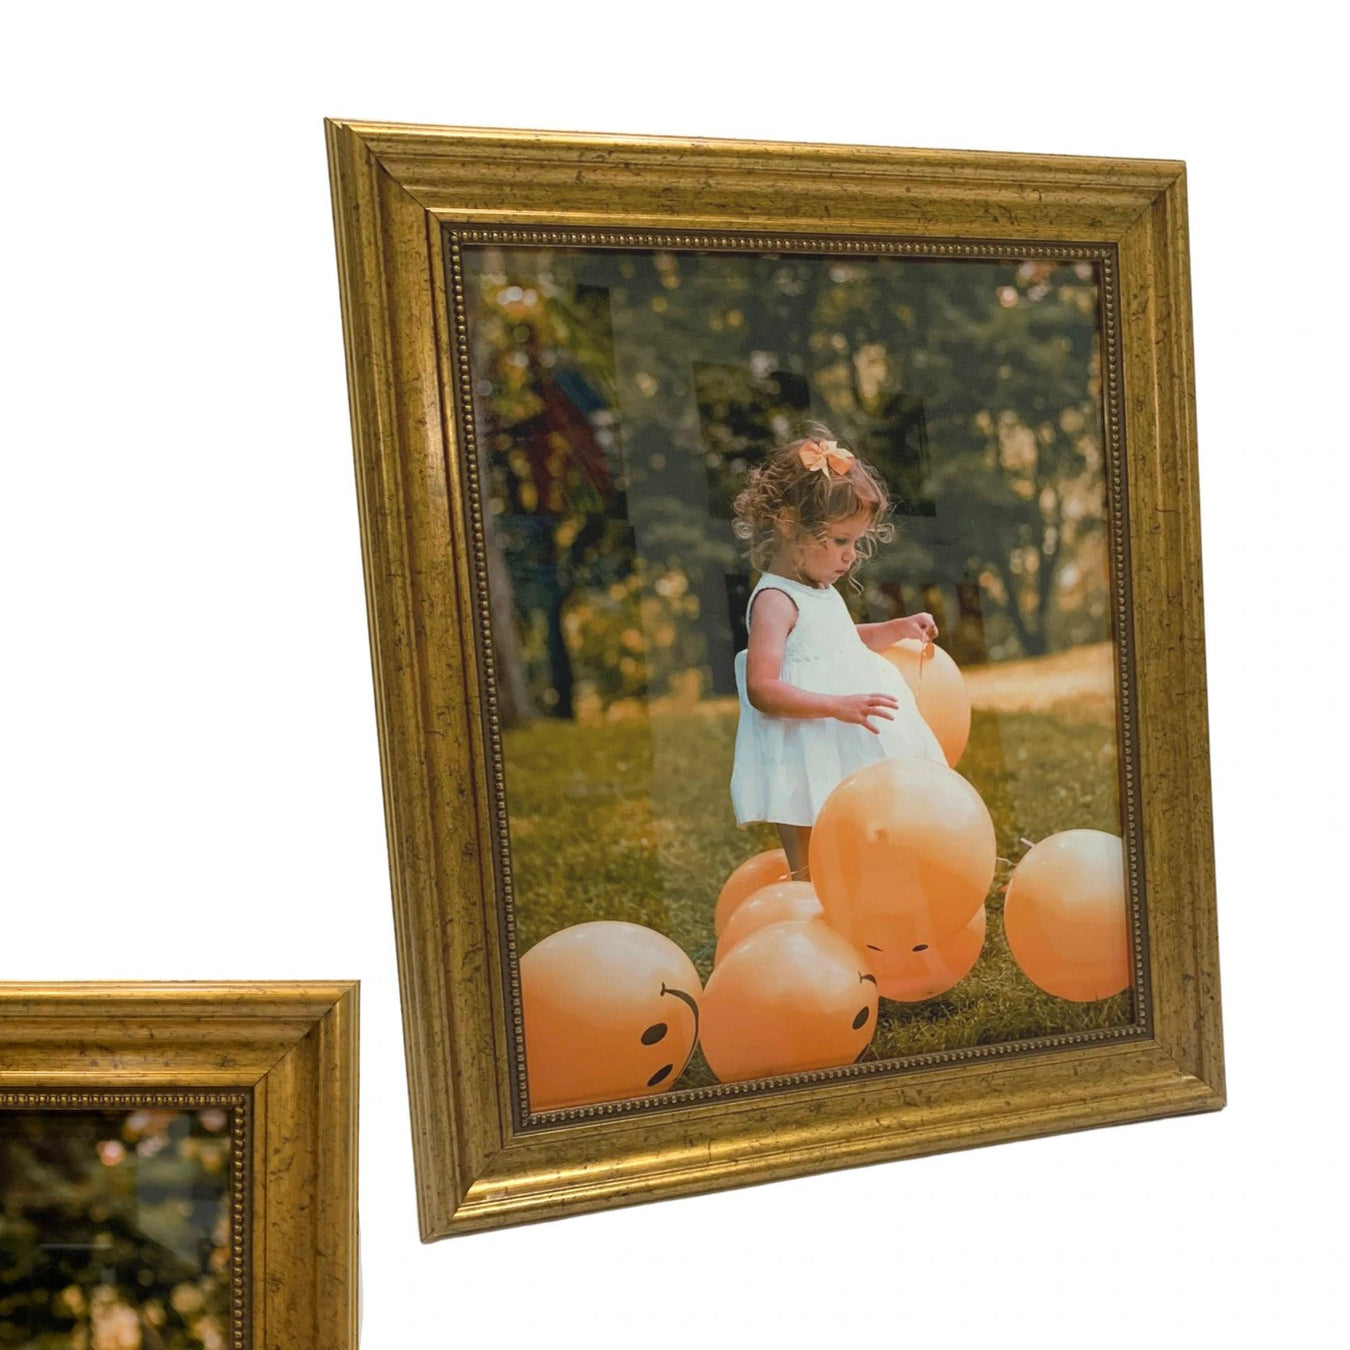 Gold Picture Frames Vintage Ornate - Modern Memory Design Picture frames - New Jersey Frame Shop Custom Framing